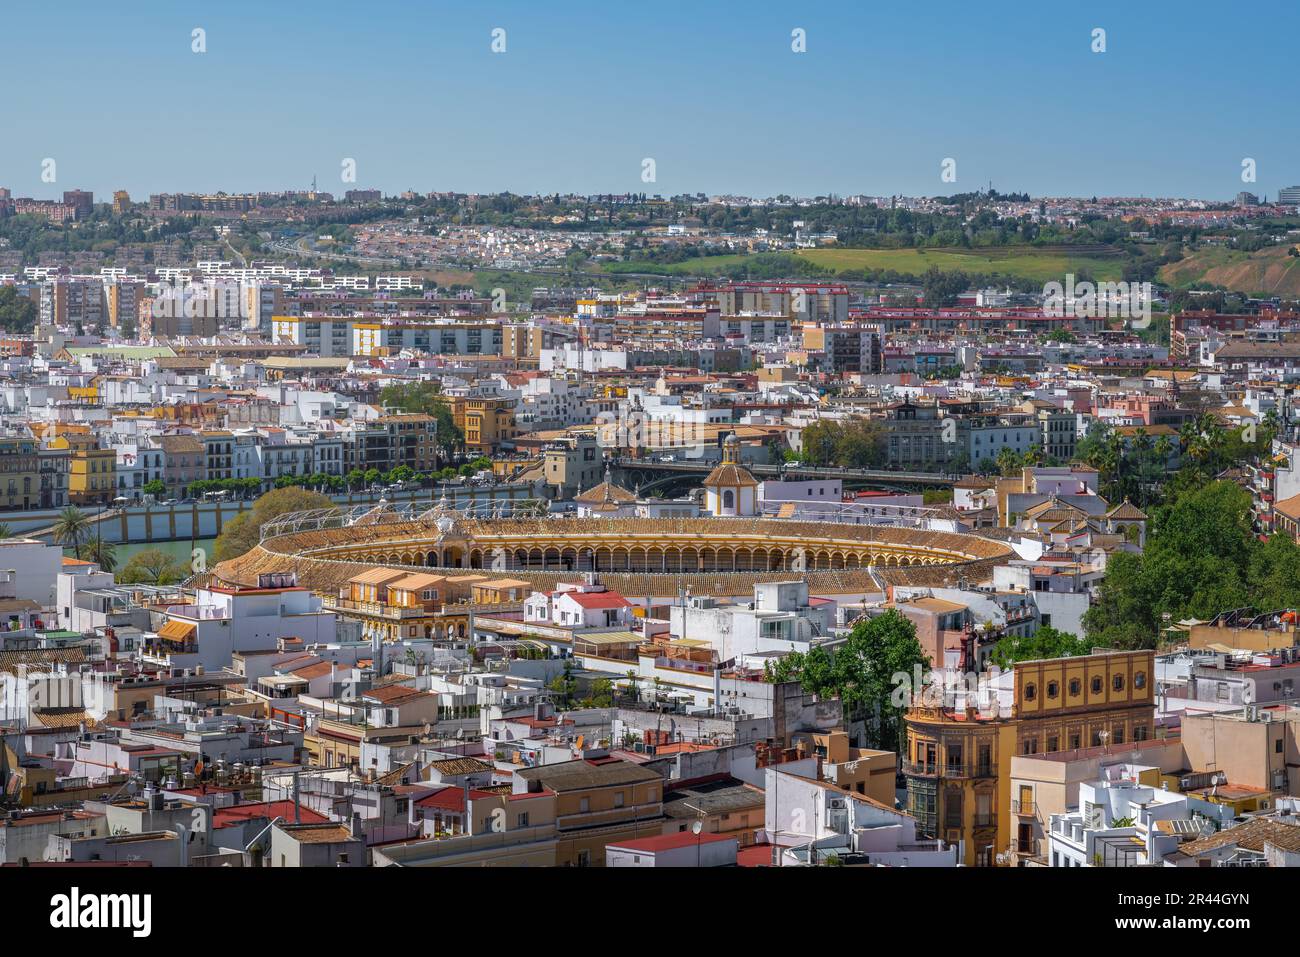 Veduta aerea di Siviglia con Plaza de Toros (Arena) - Siviglia, Andalusia, Spagna Foto Stock